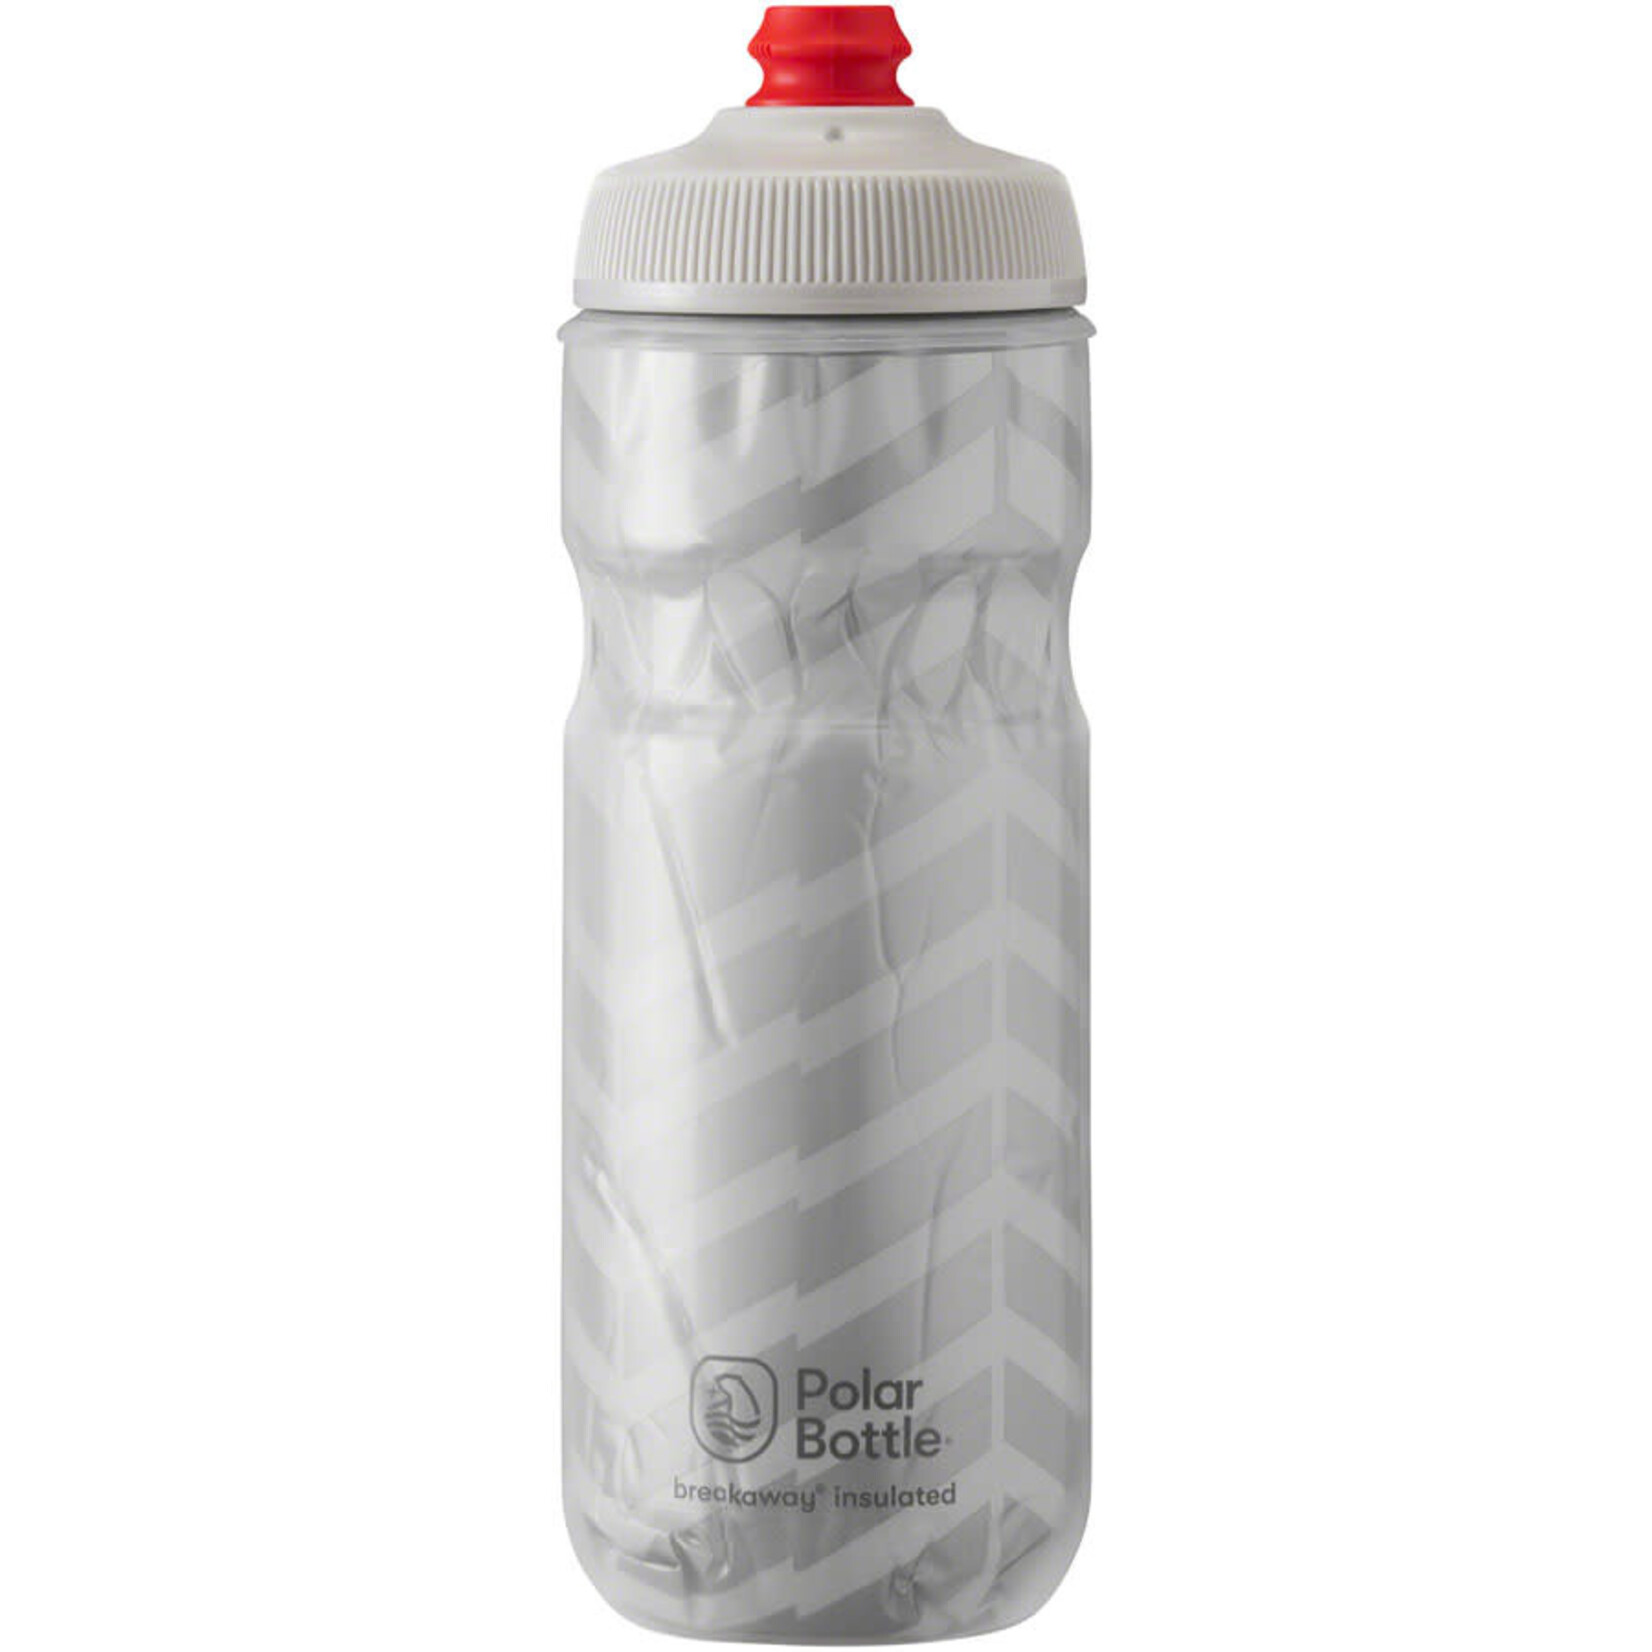 Polar Bottles Polar Bottles Breakaway Bolt Insulated Water Bottle - 20oz, White/Silver